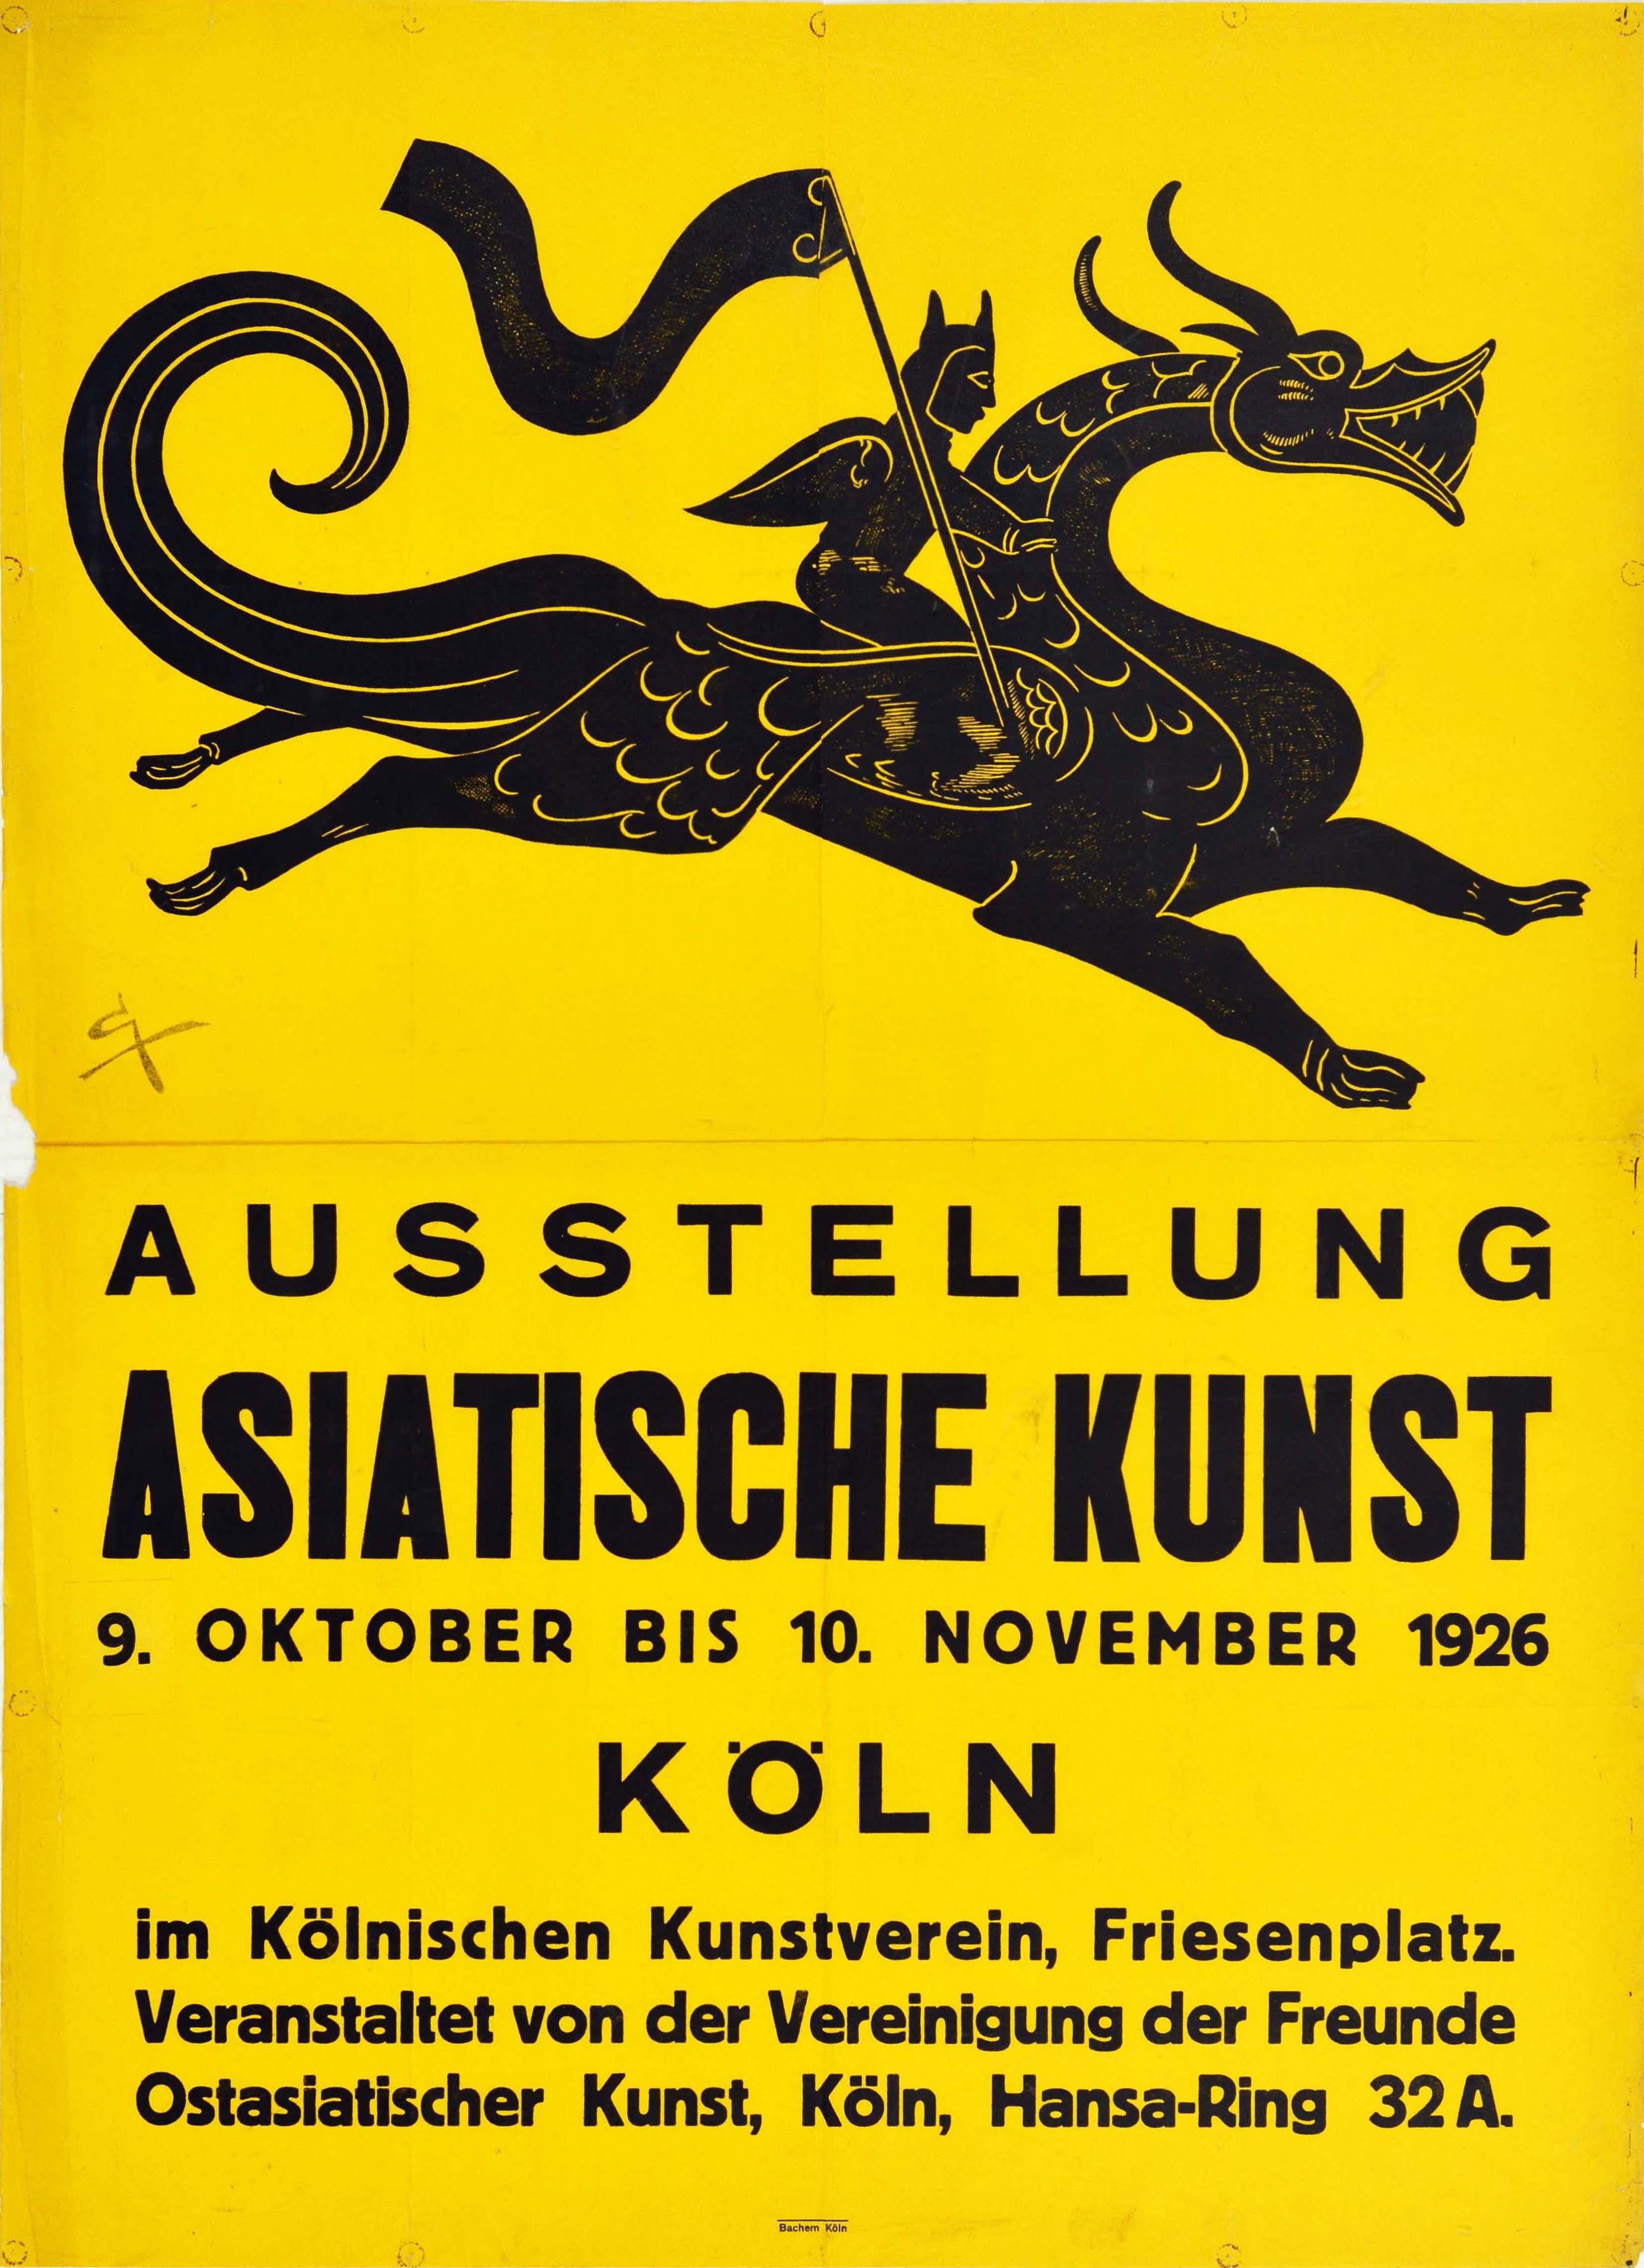 Unknown Print - Original Vintage Poster Asian Art Exhibition Asiatische Kunst Koln Dragon Design